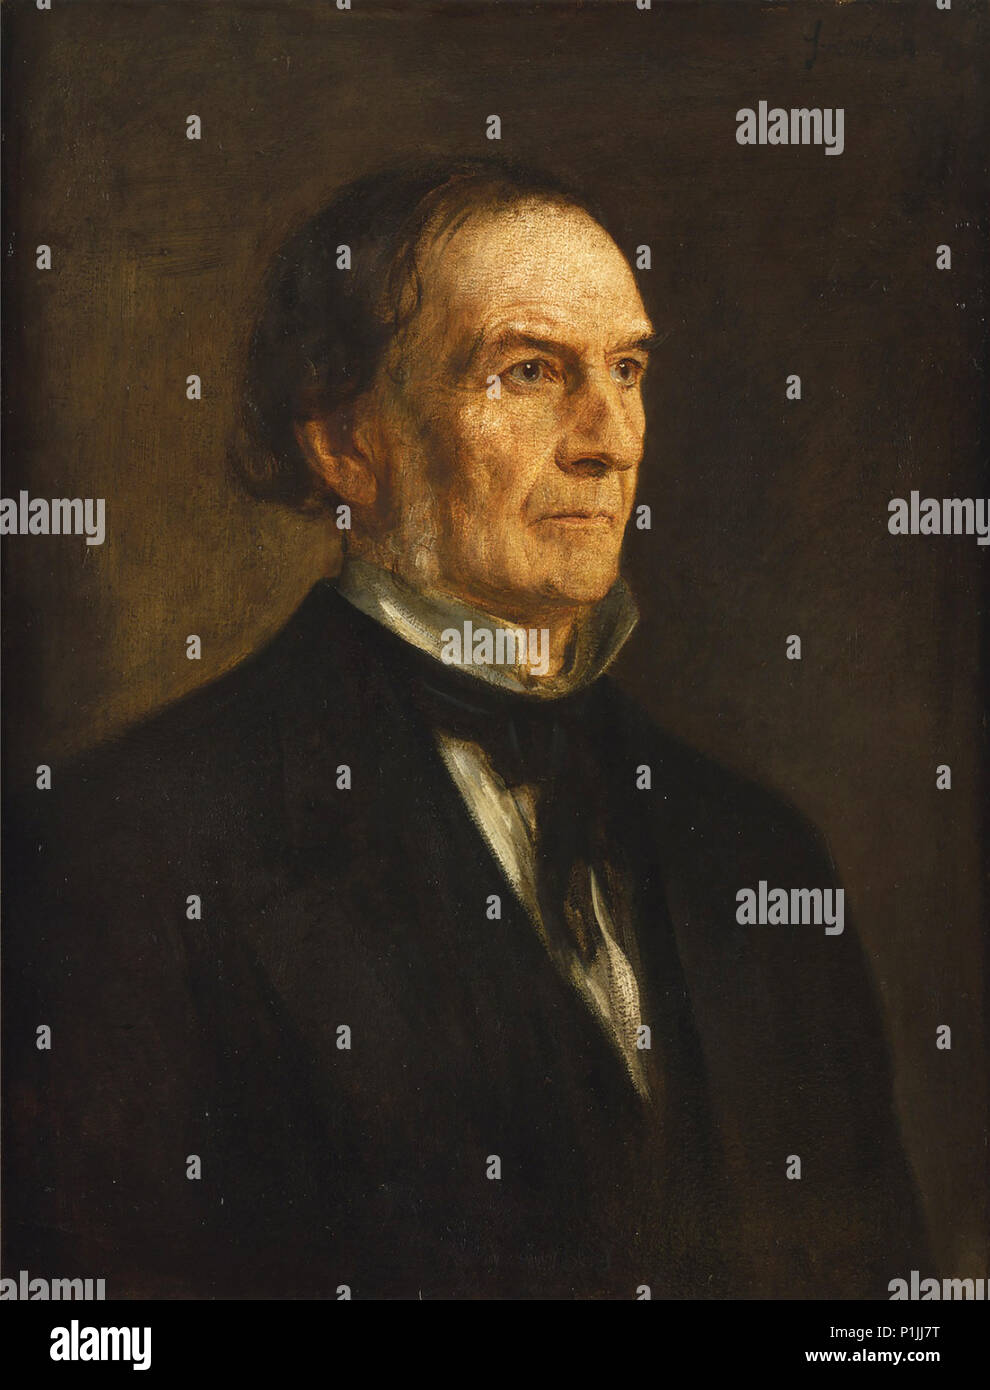 Ritratto di William Ewart Gladstone ( 29 Dicembre 1809 - 19 Maggio 1898 ) da Franz von Lenbach, 1874, olio su tela, dimensioni 70 × 53 cm, collezione privata Foto Stock